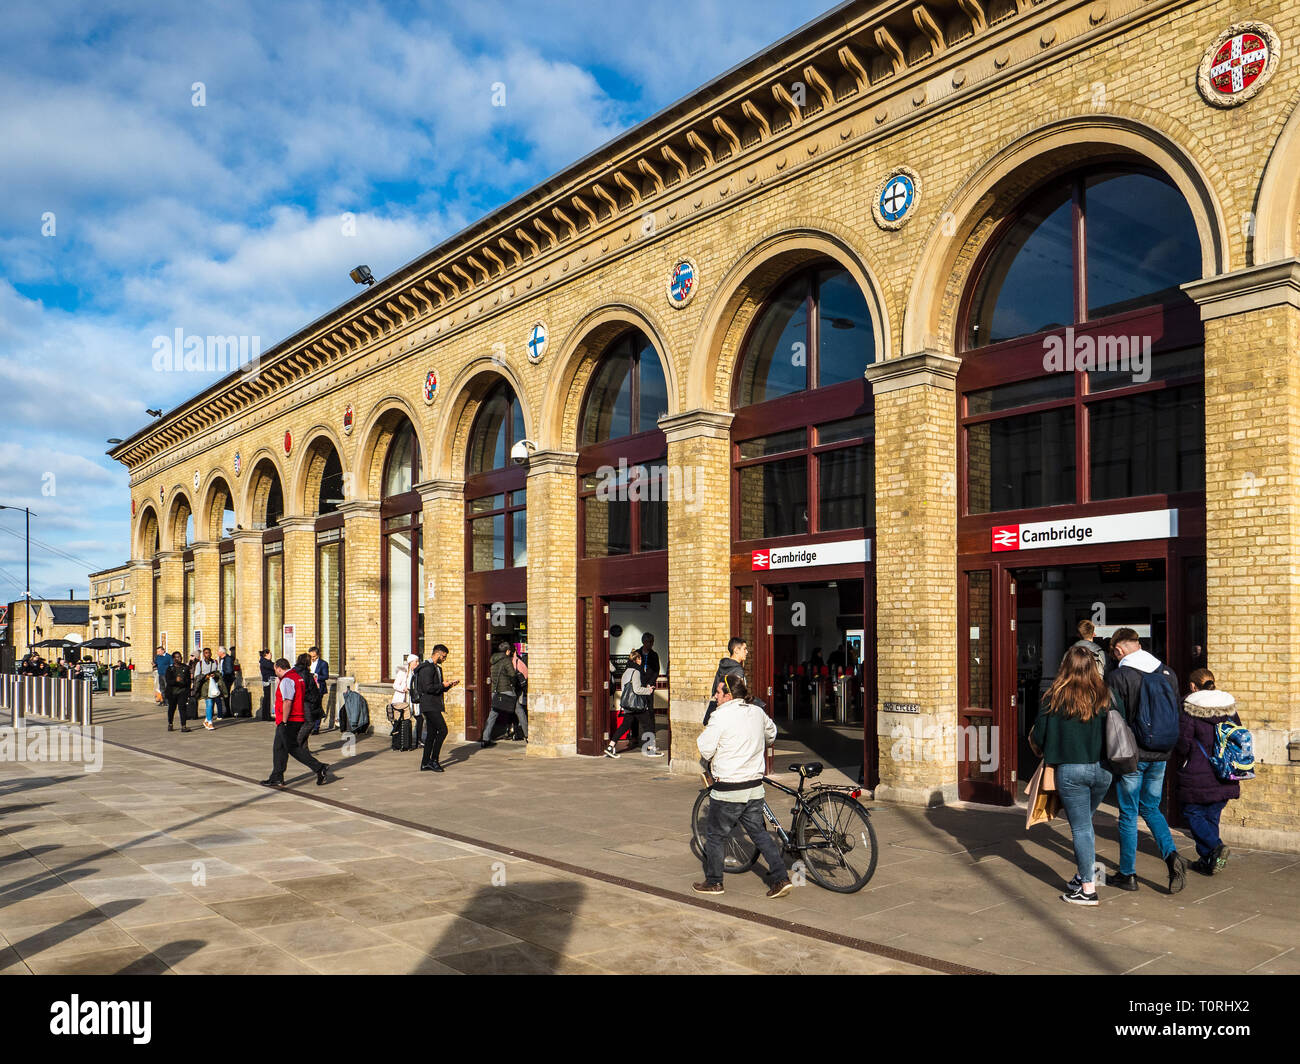 Cambridge Railway Station a Cambridge UK, originariamente costruita nel 1845, ristrutturata nel 2016-17. Foto Stock